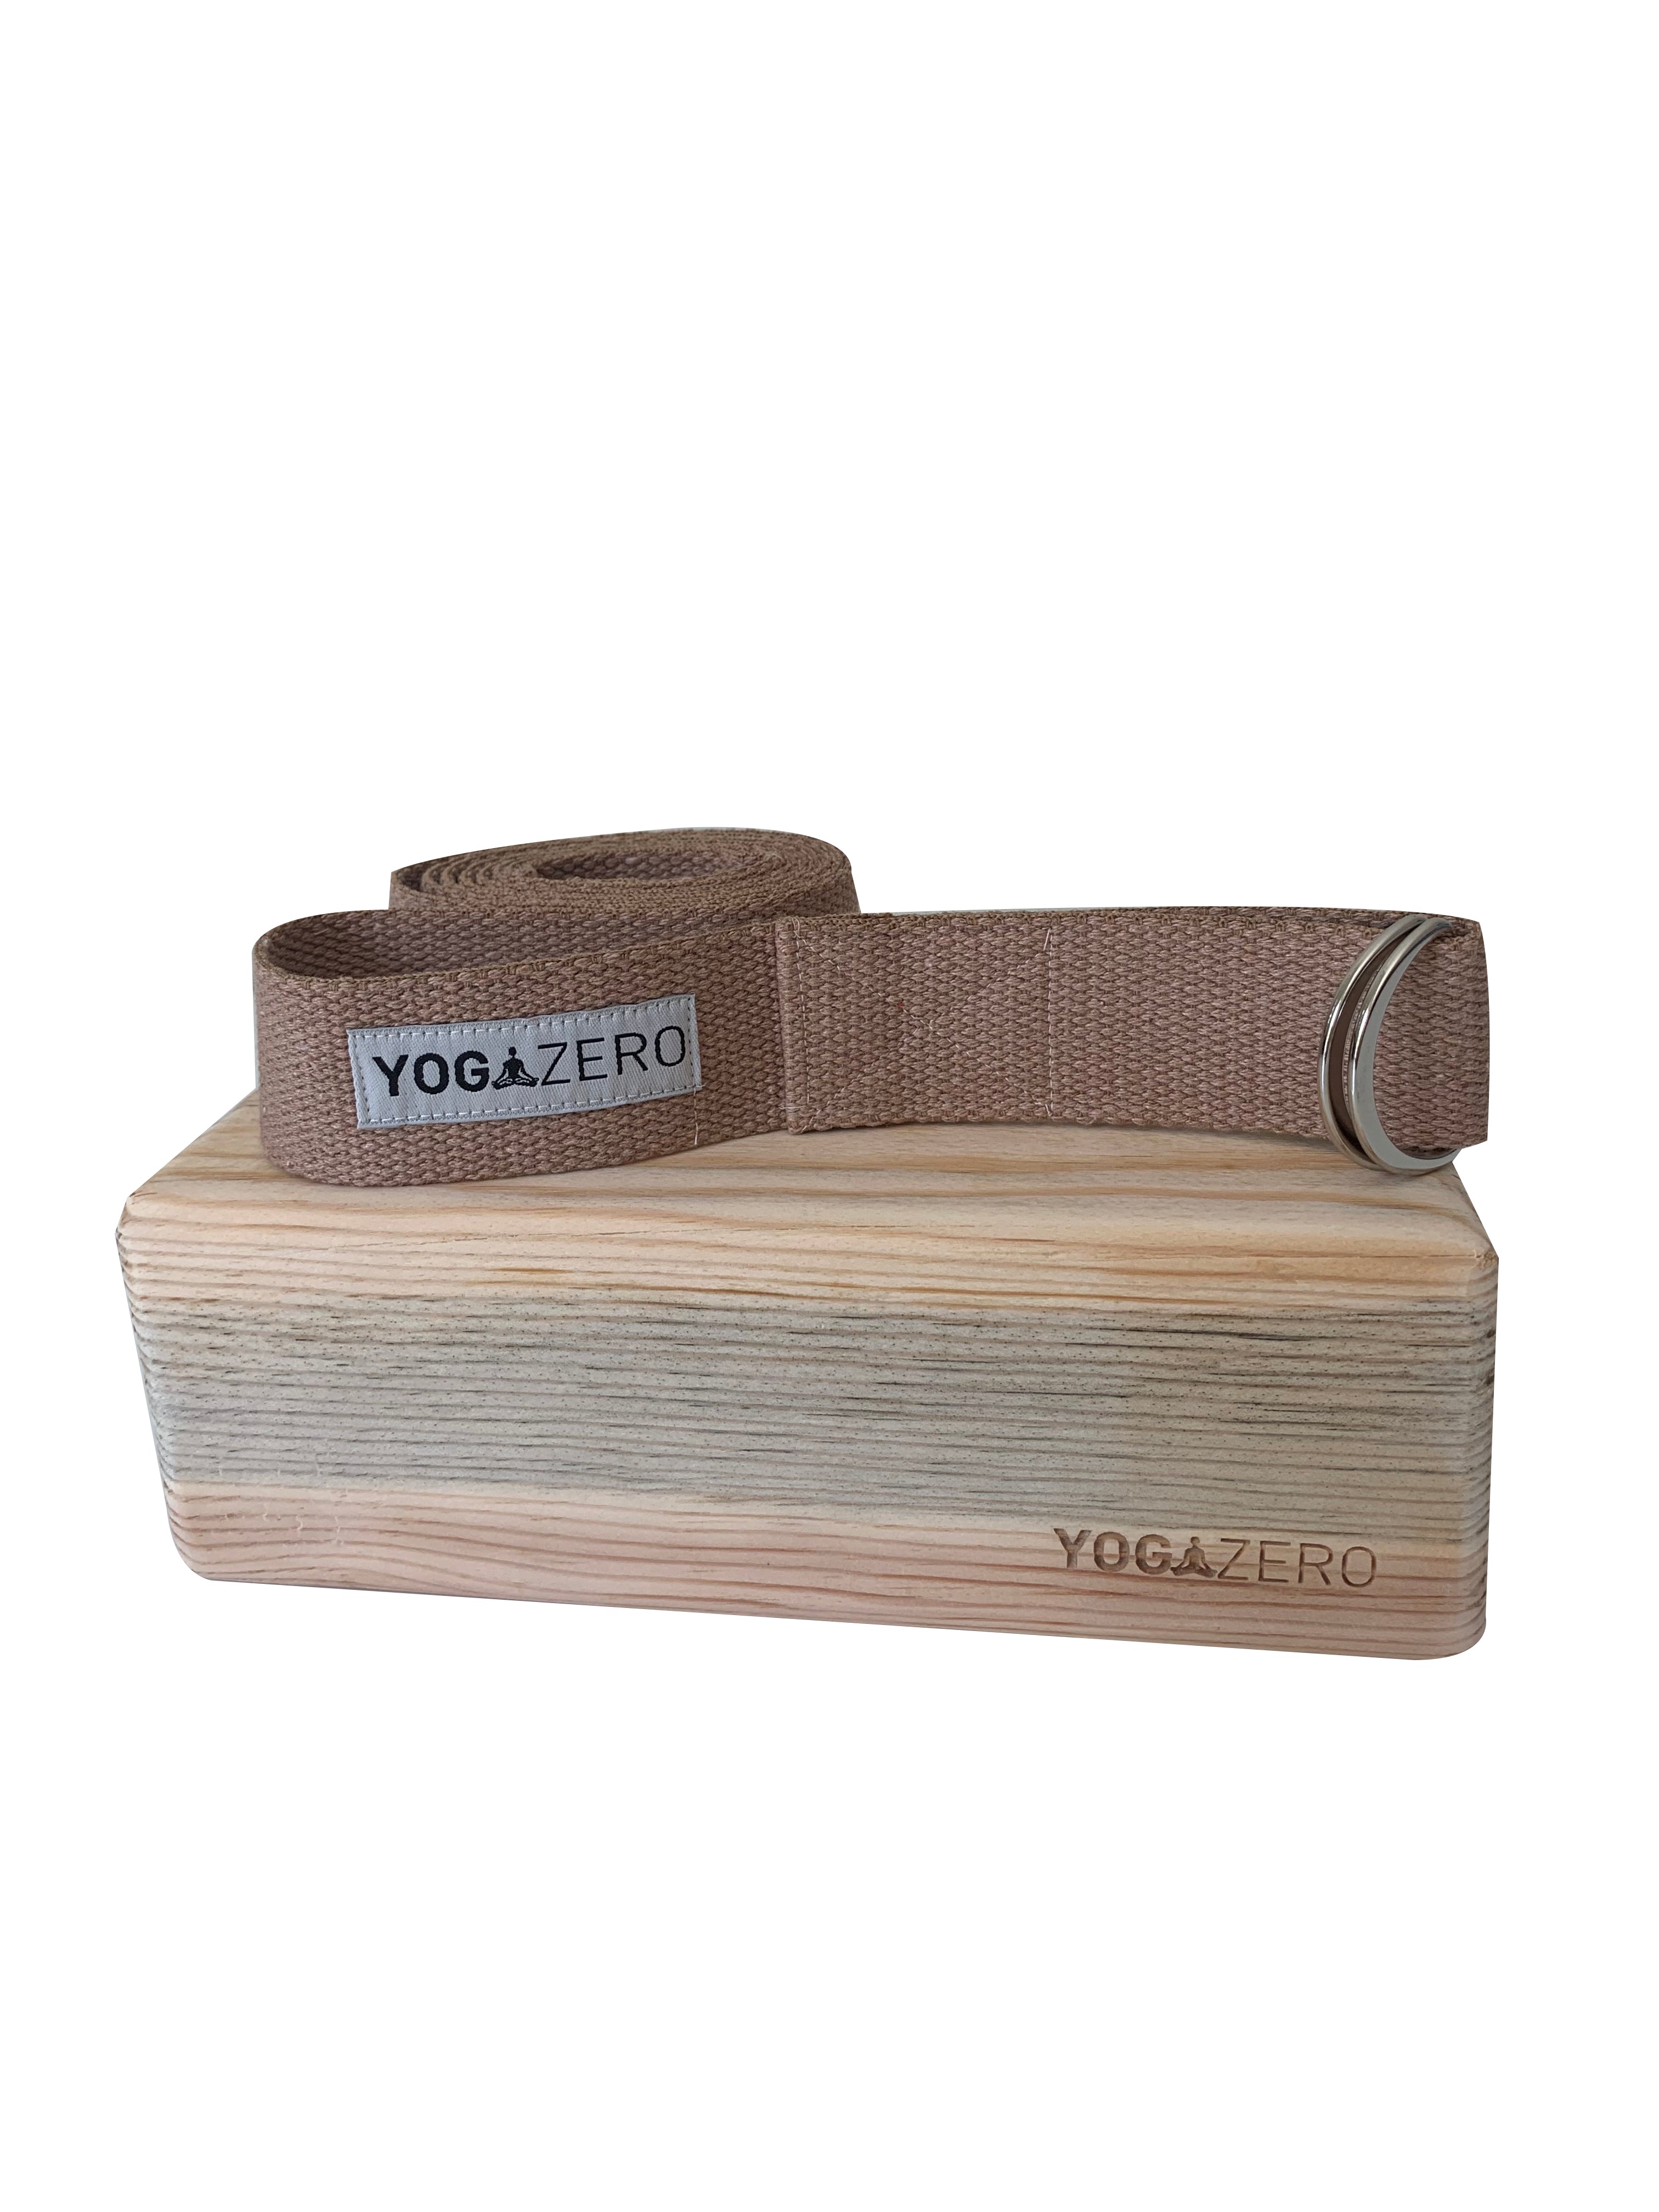 1 adet Çam Yoga Blok ve Taba renk Yoga Kemer